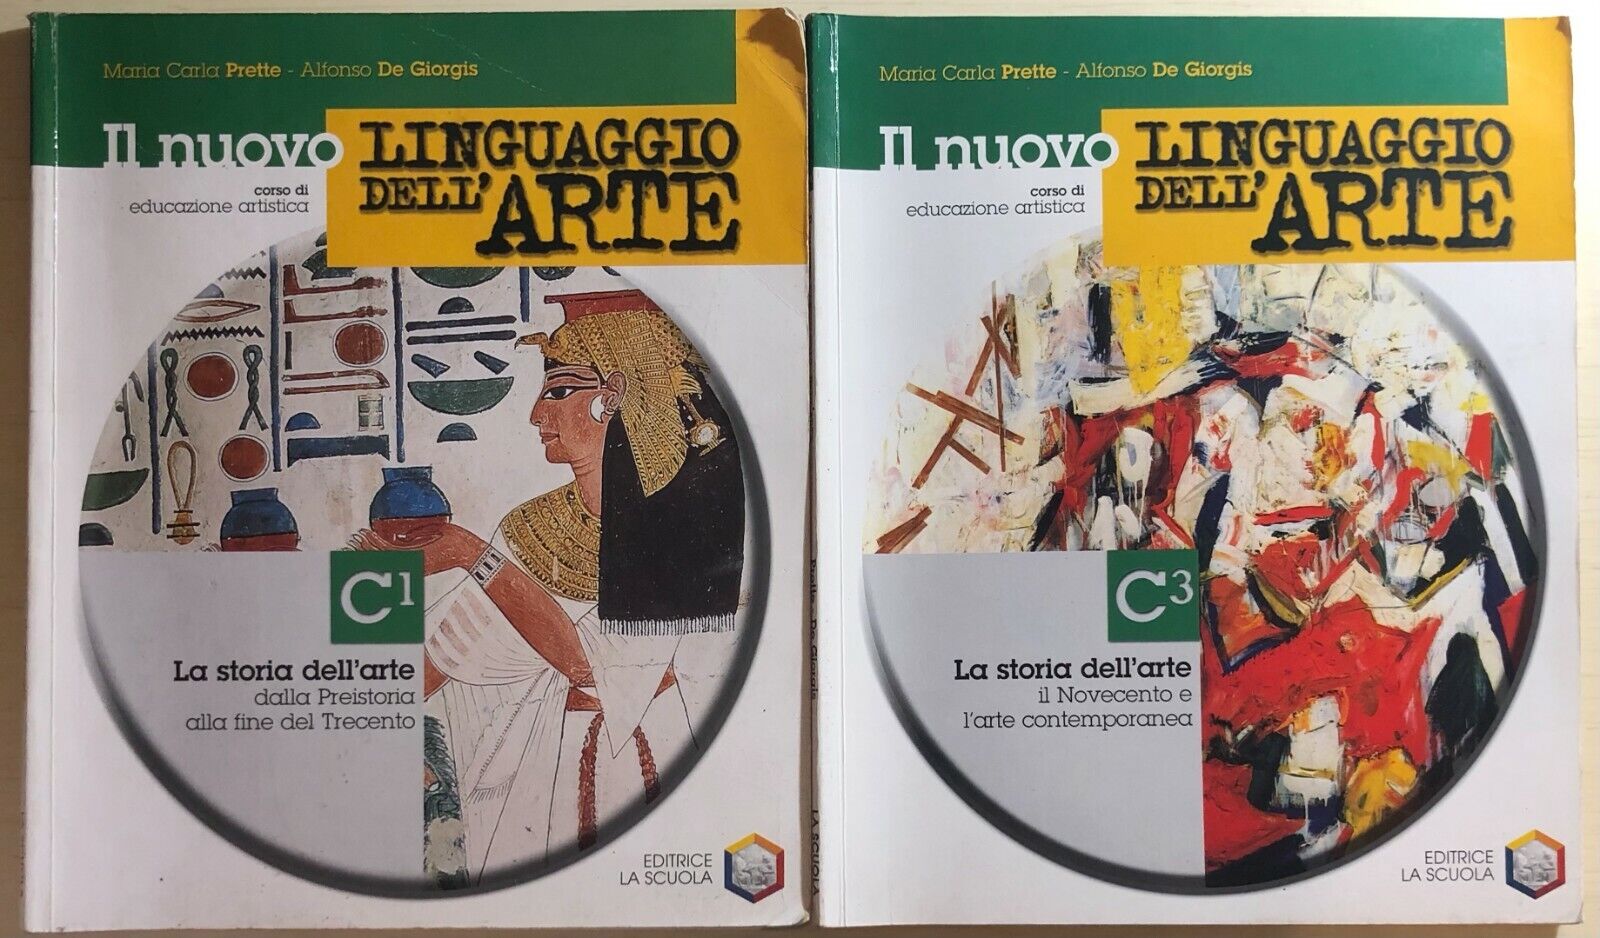 Linguaggio delL'arte C1-C3 di Prette-de Giorgis, 2003, Editrice La Scuola